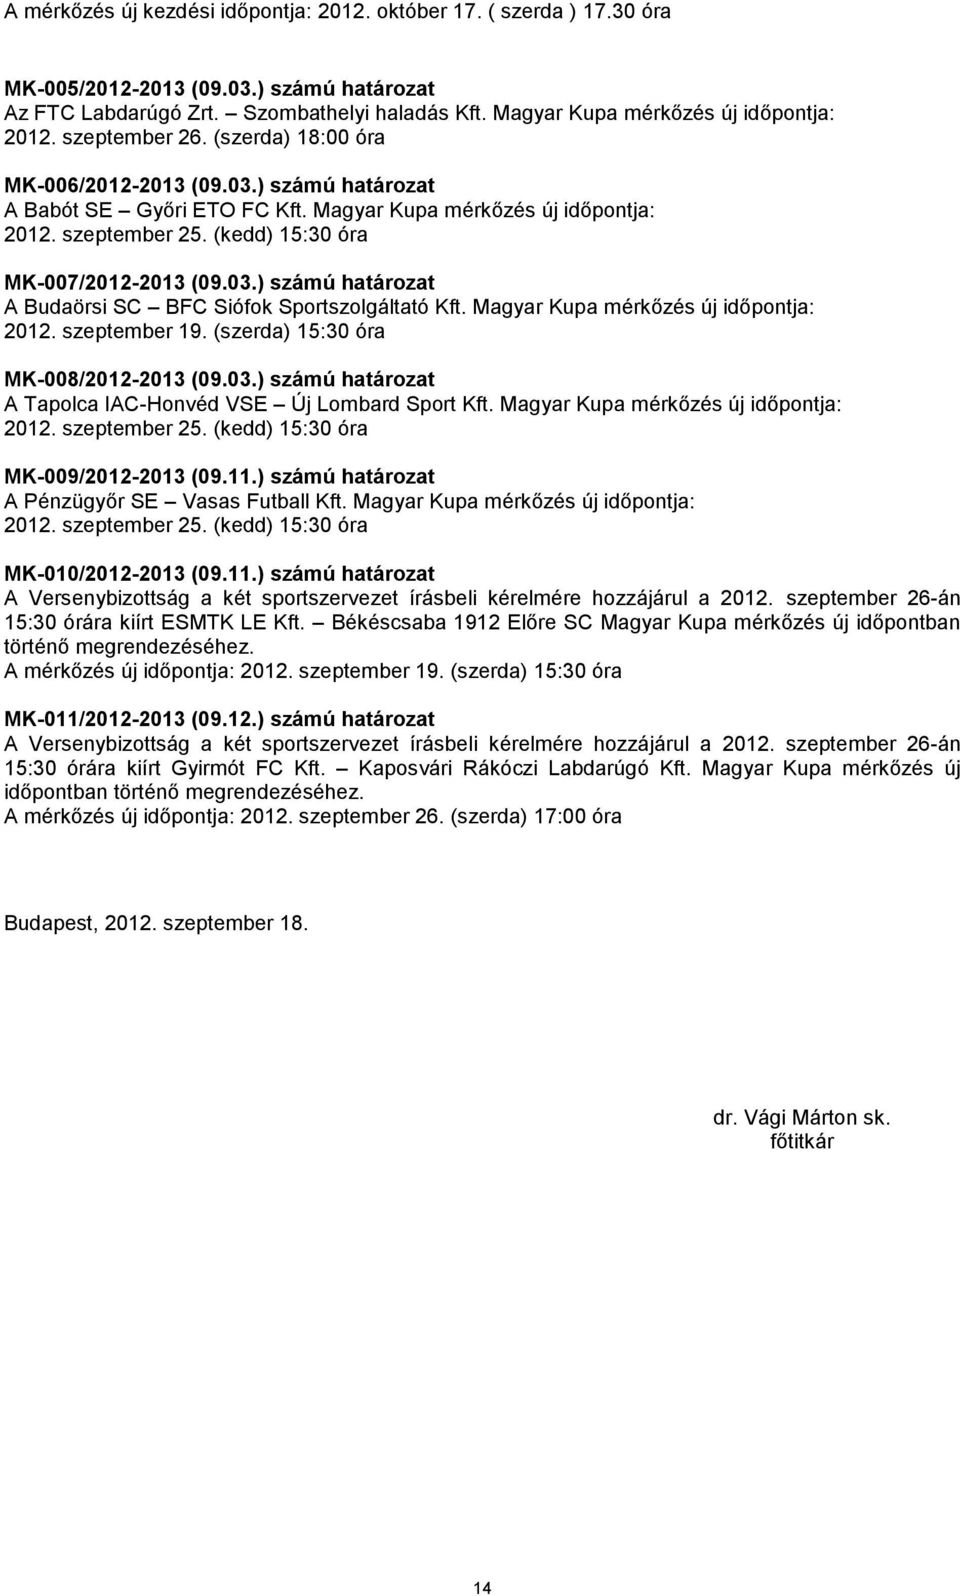 szeptember 25. (kedd) 15:30 óra MK-007/2012-2013 (09.03.) számú határozat A Budaörsi SC BFC Siófok Sportszolgáltató Kft. Magyar Kupa mérkőzés új időpontja: 2012. szeptember 19.